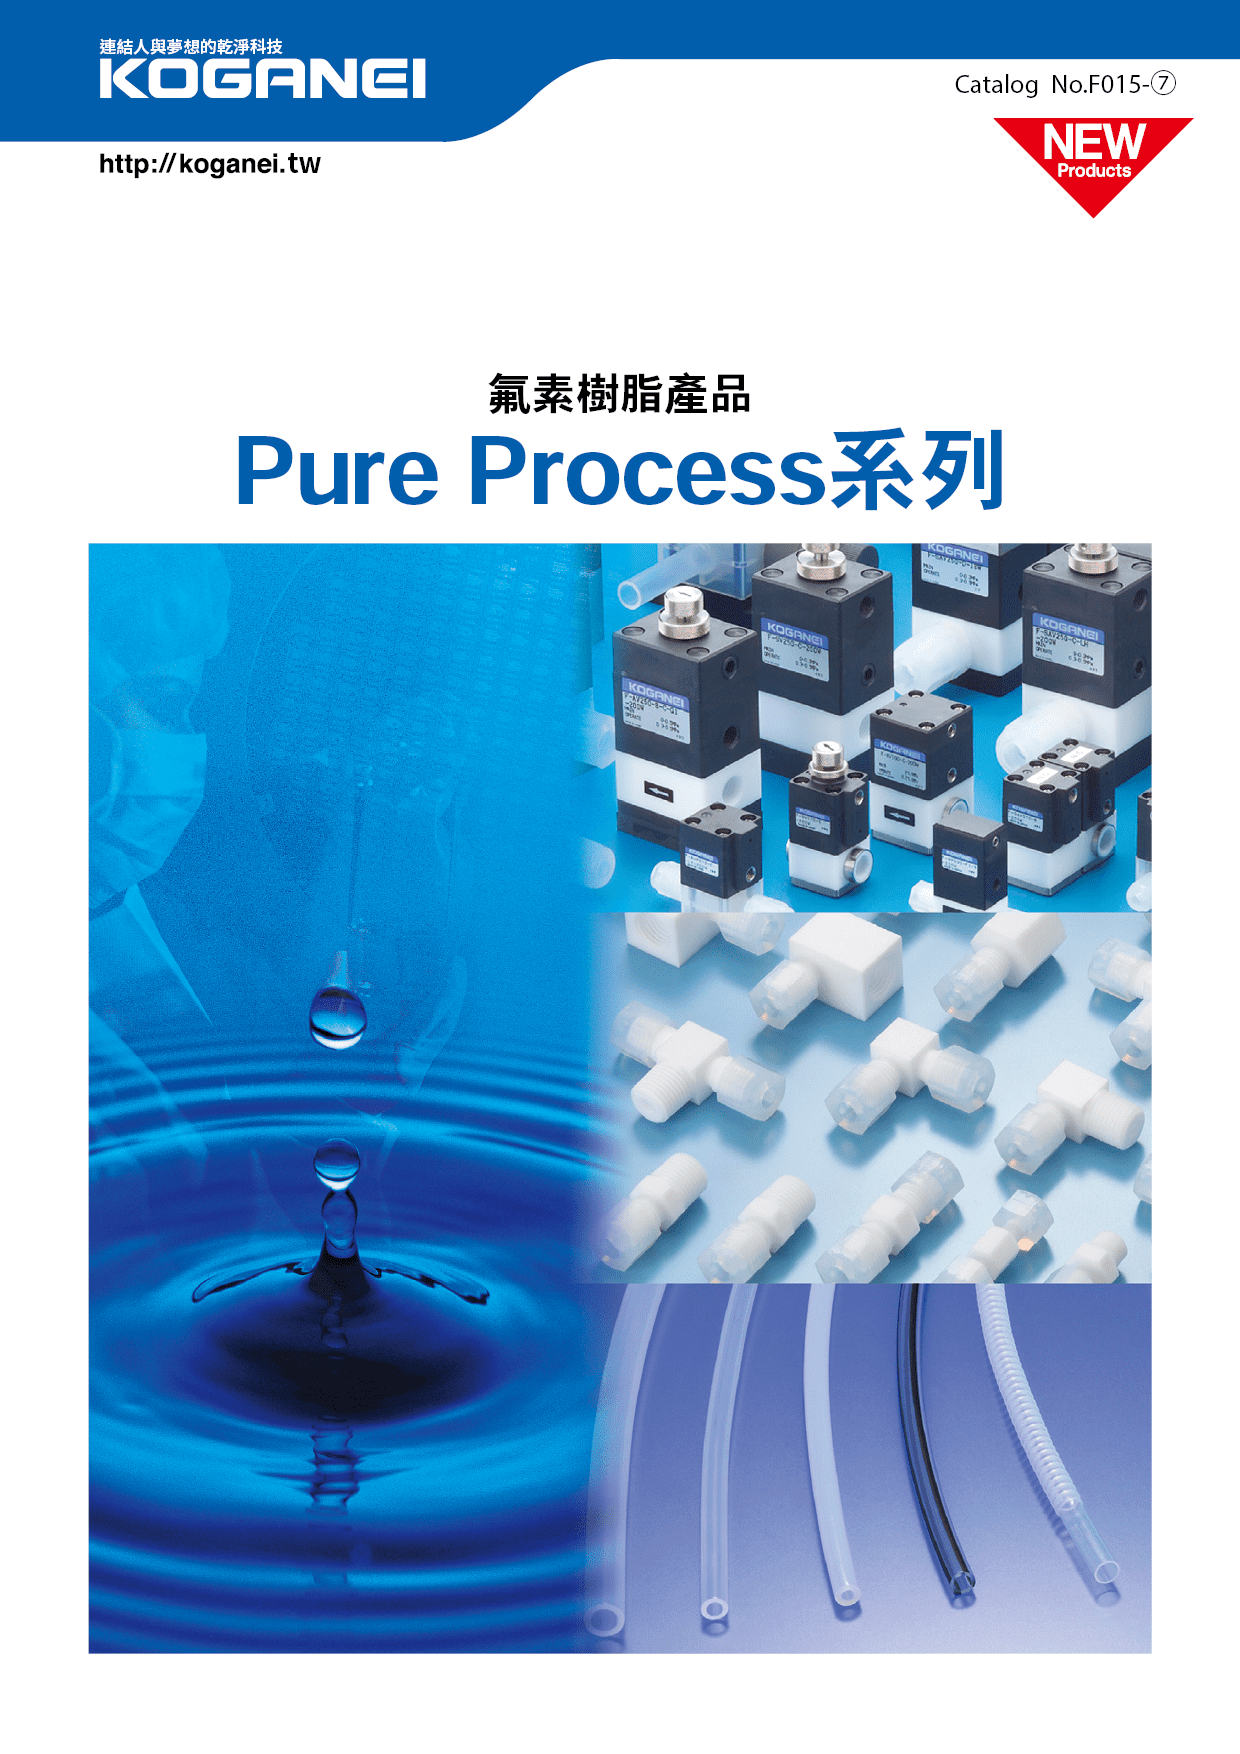 氟素樹脂產品Pure Process系列-產品特色1